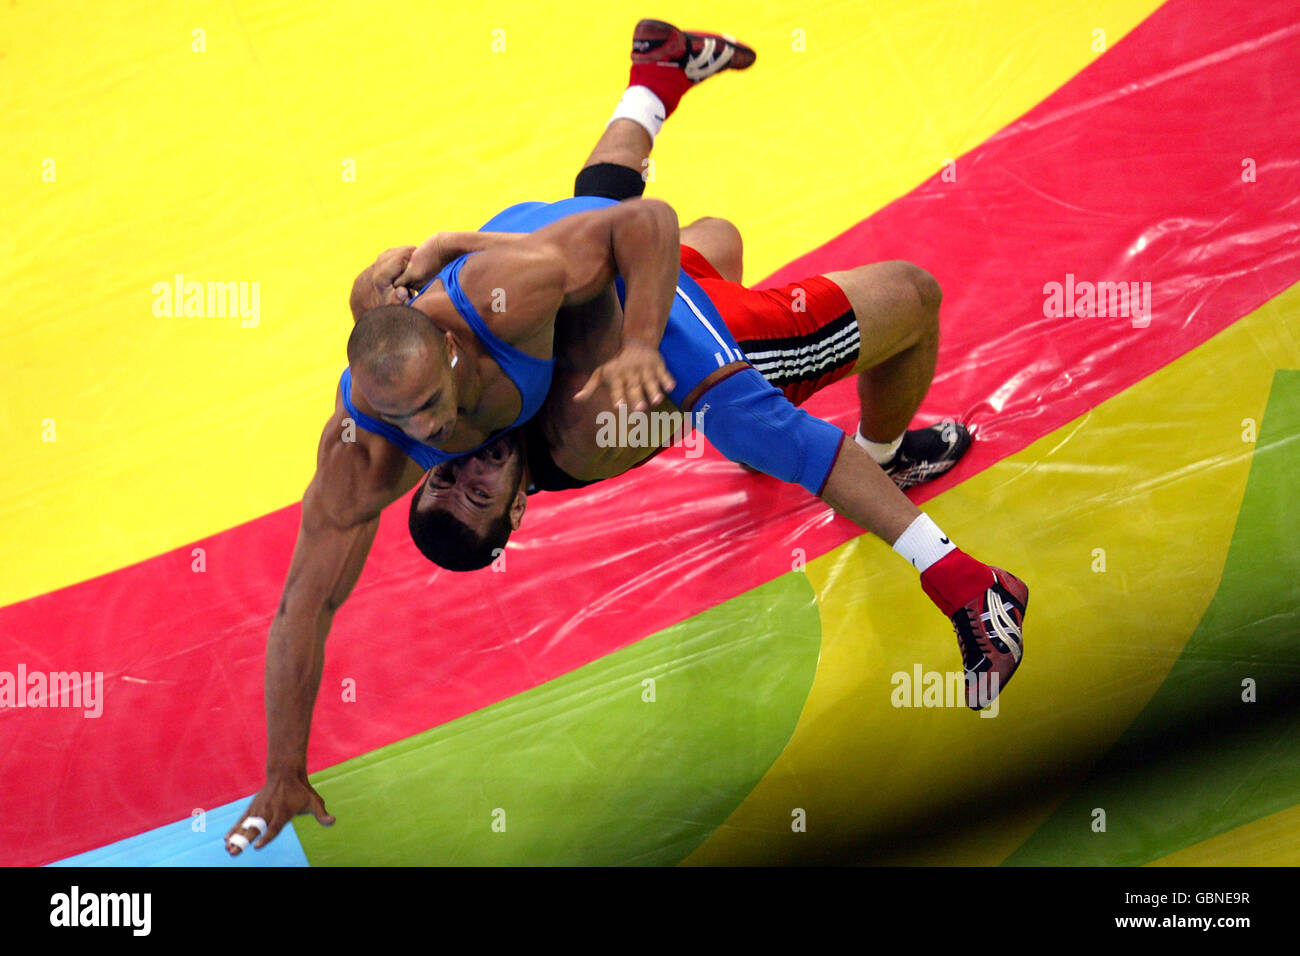 Ringen - Olympische Spiele 2004 in Athen - Greco-Roman 96kg der Männer - Finale. Georgiens Ramaz Nozadze (rot) und Ägyptens Karam Ibrahim (blau) kämpfen um die Goldmedaille Stockfoto